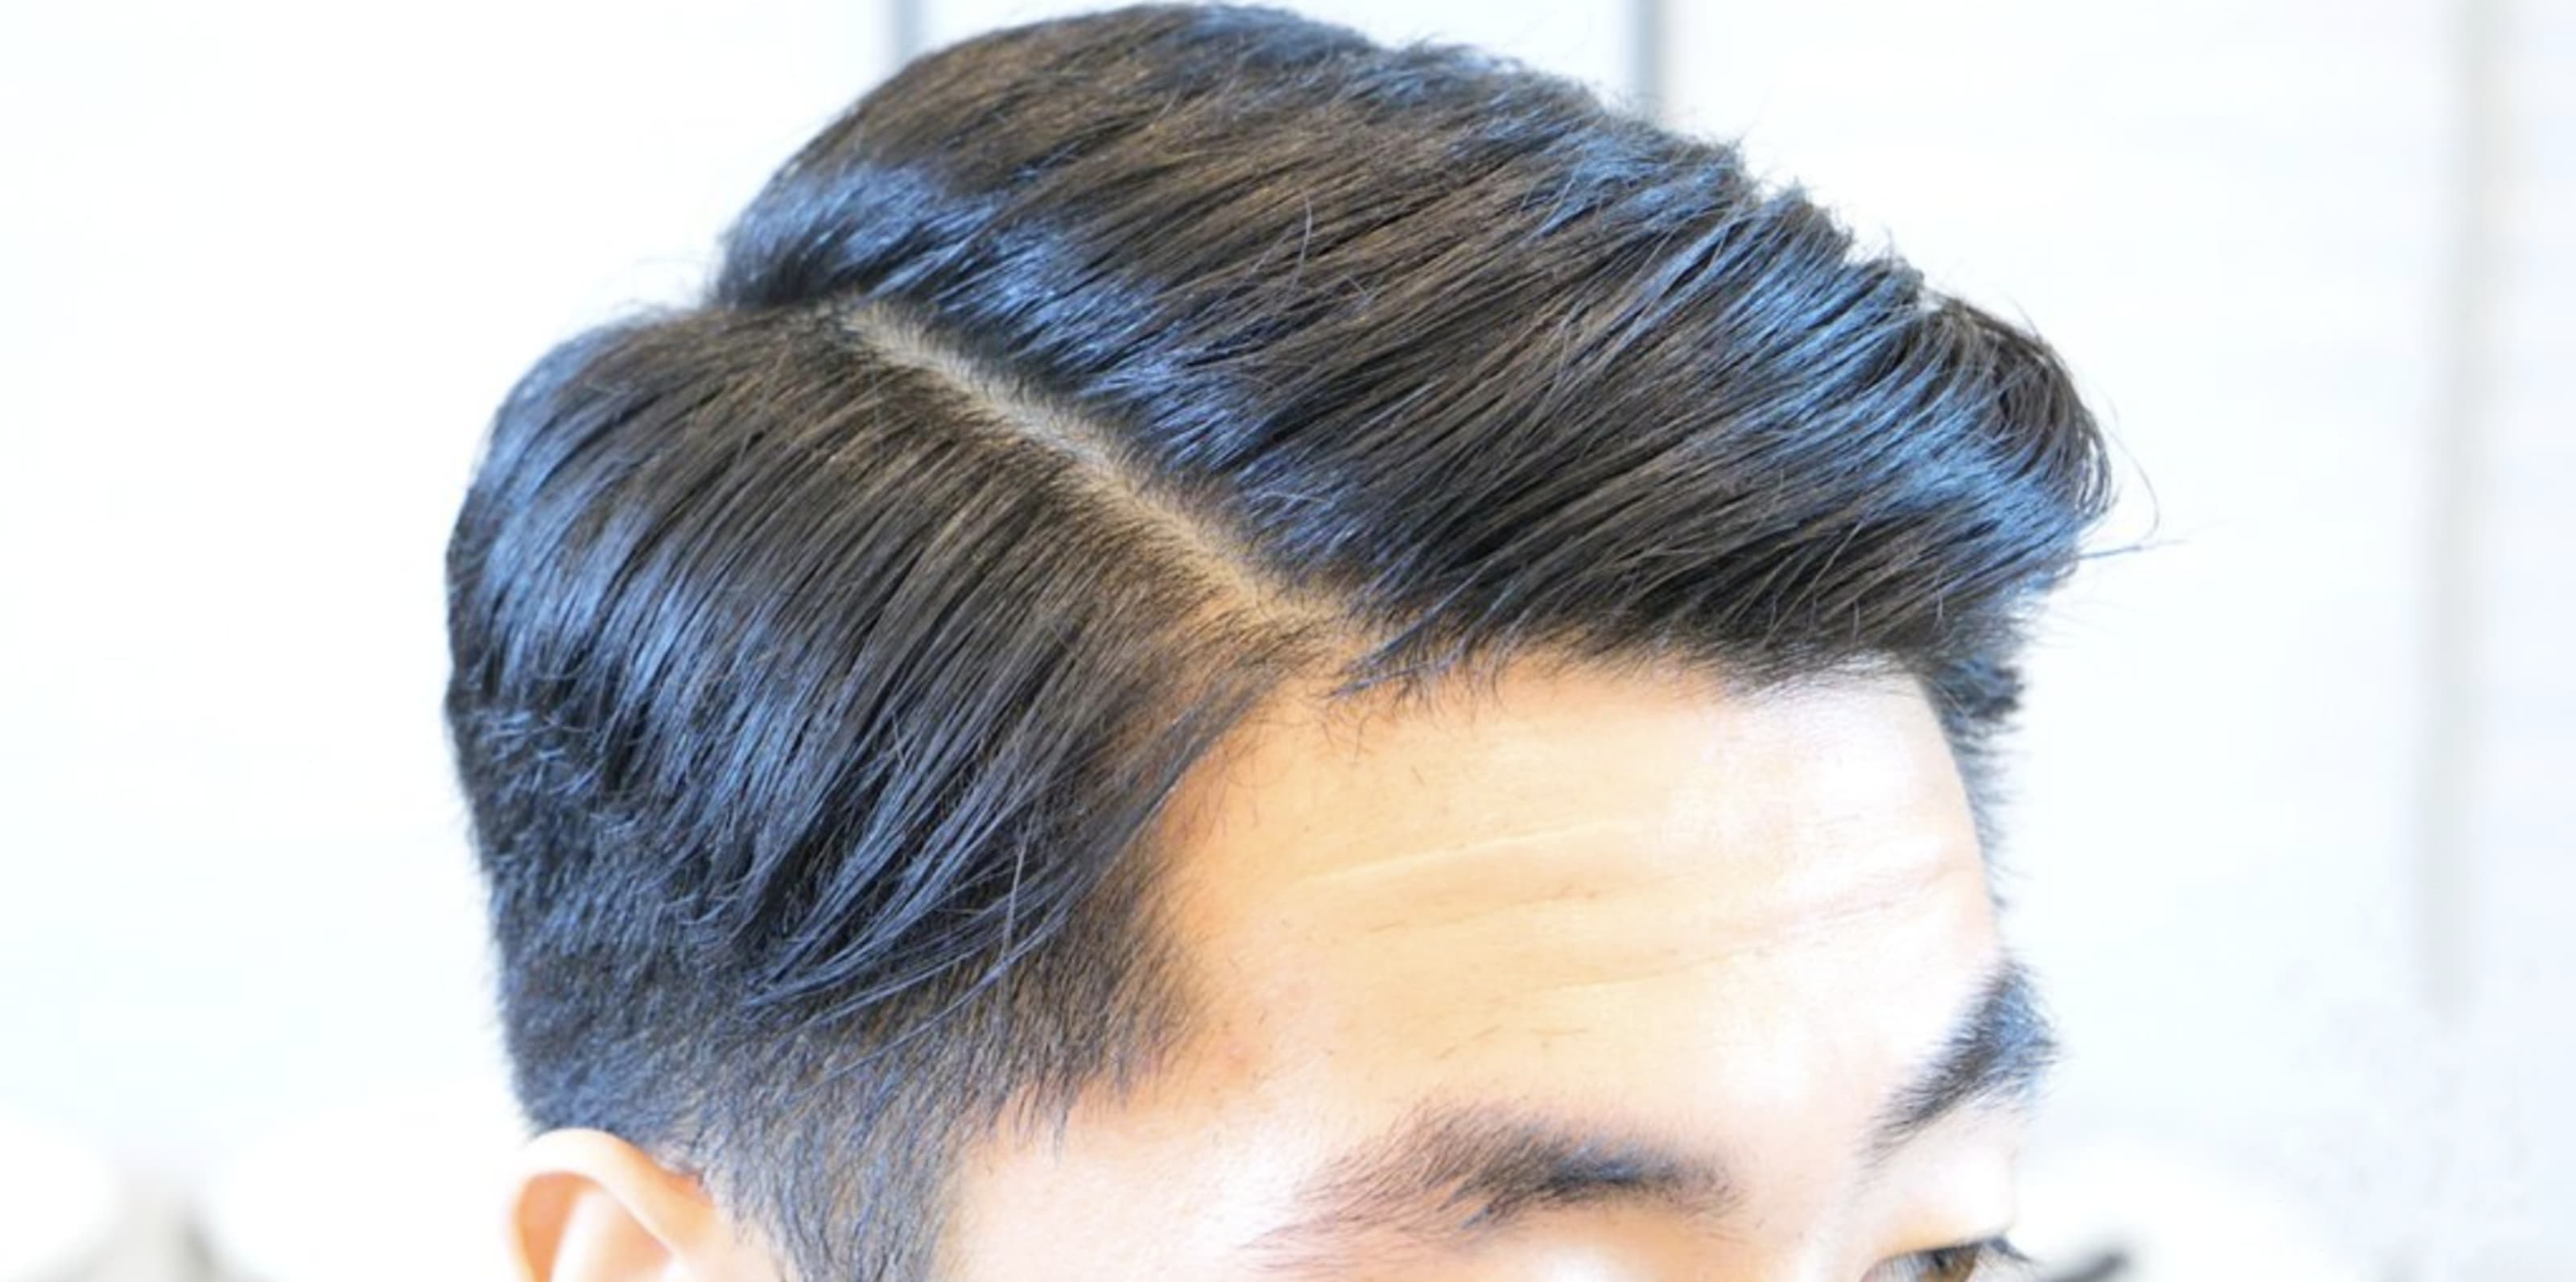 7 Best Asian Men Hairstyles Mack For Men